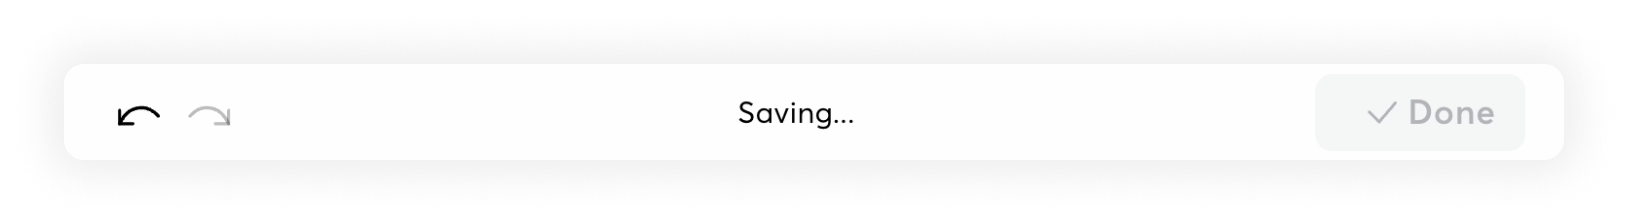 saving.png